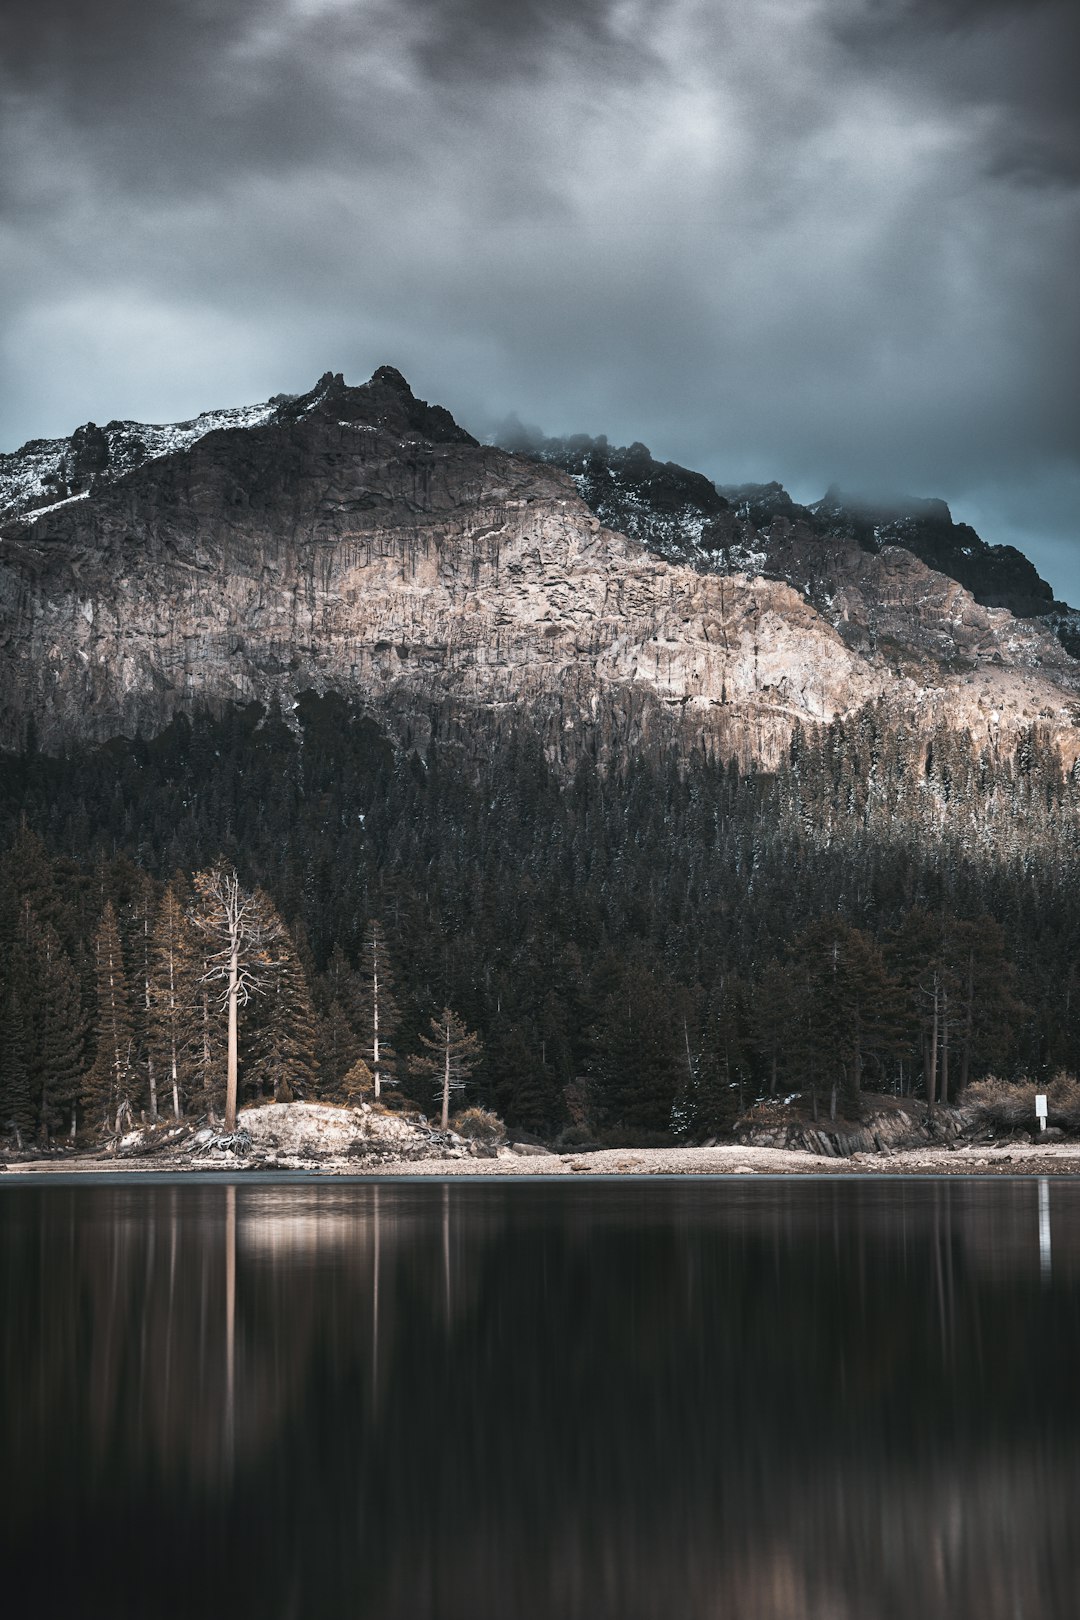 lake by mountain under gray skies at daytime